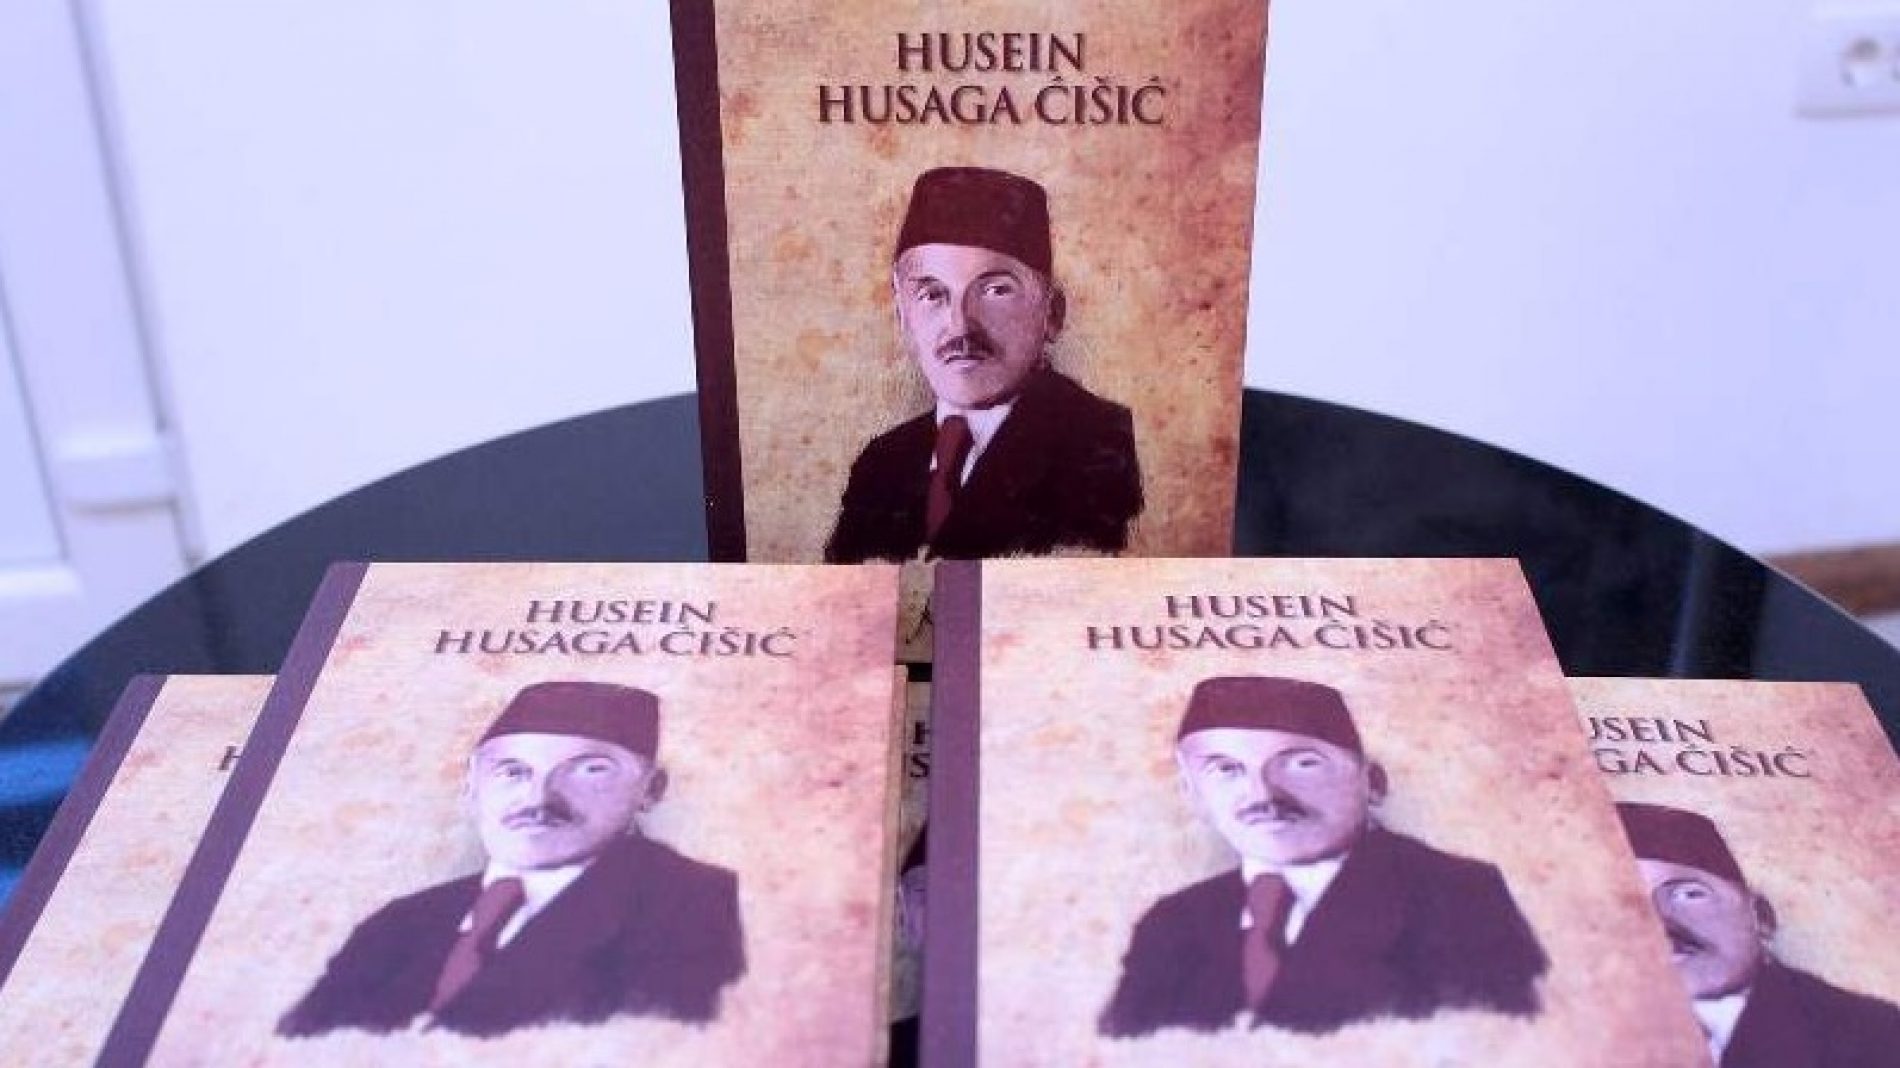 Knjiga o Huseinu Ćišiću govori o prošlosti Bošnjaka i putu kojim treba krenuti